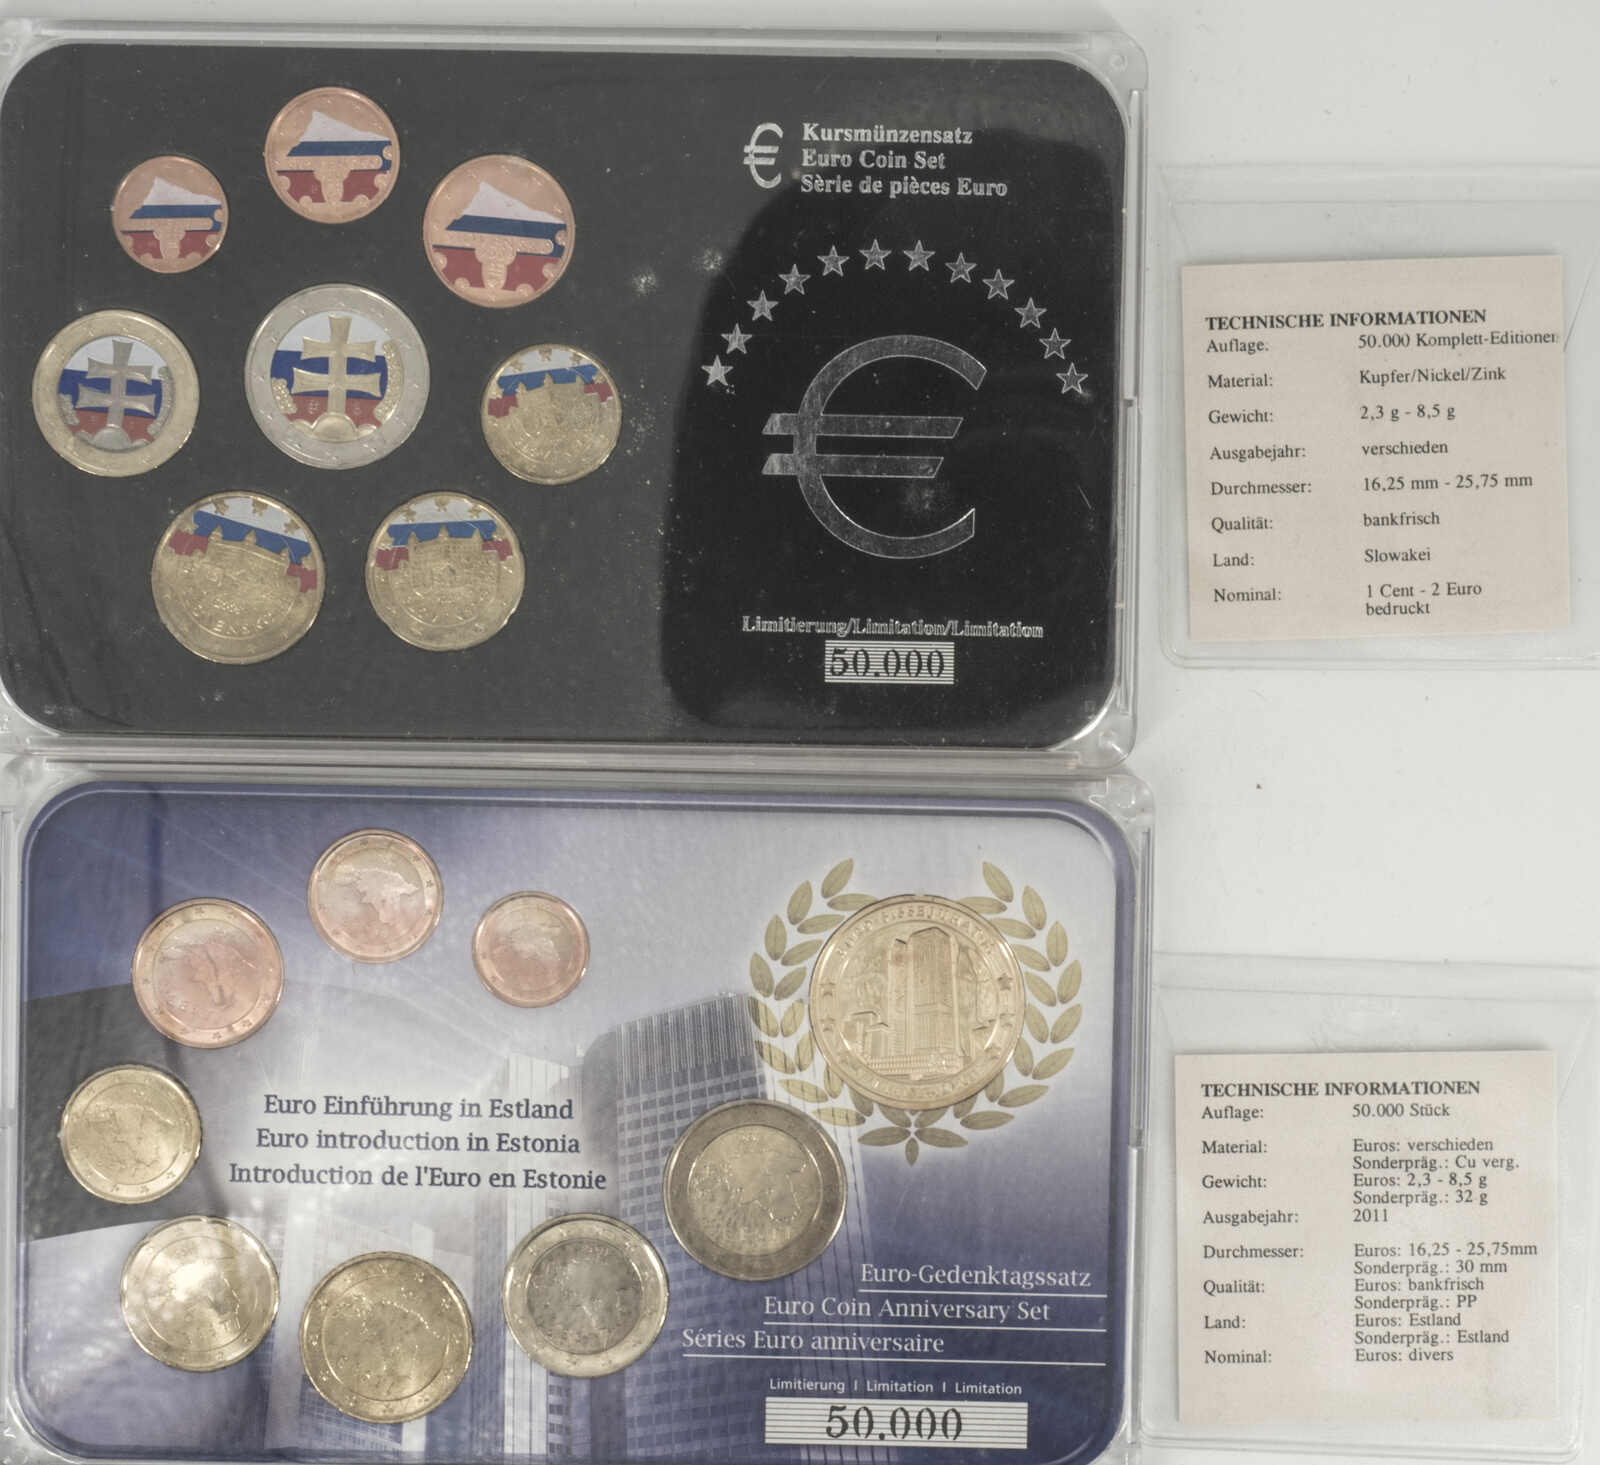 40.90.10.10: Europe - Estonia - Euro - Coins - sets